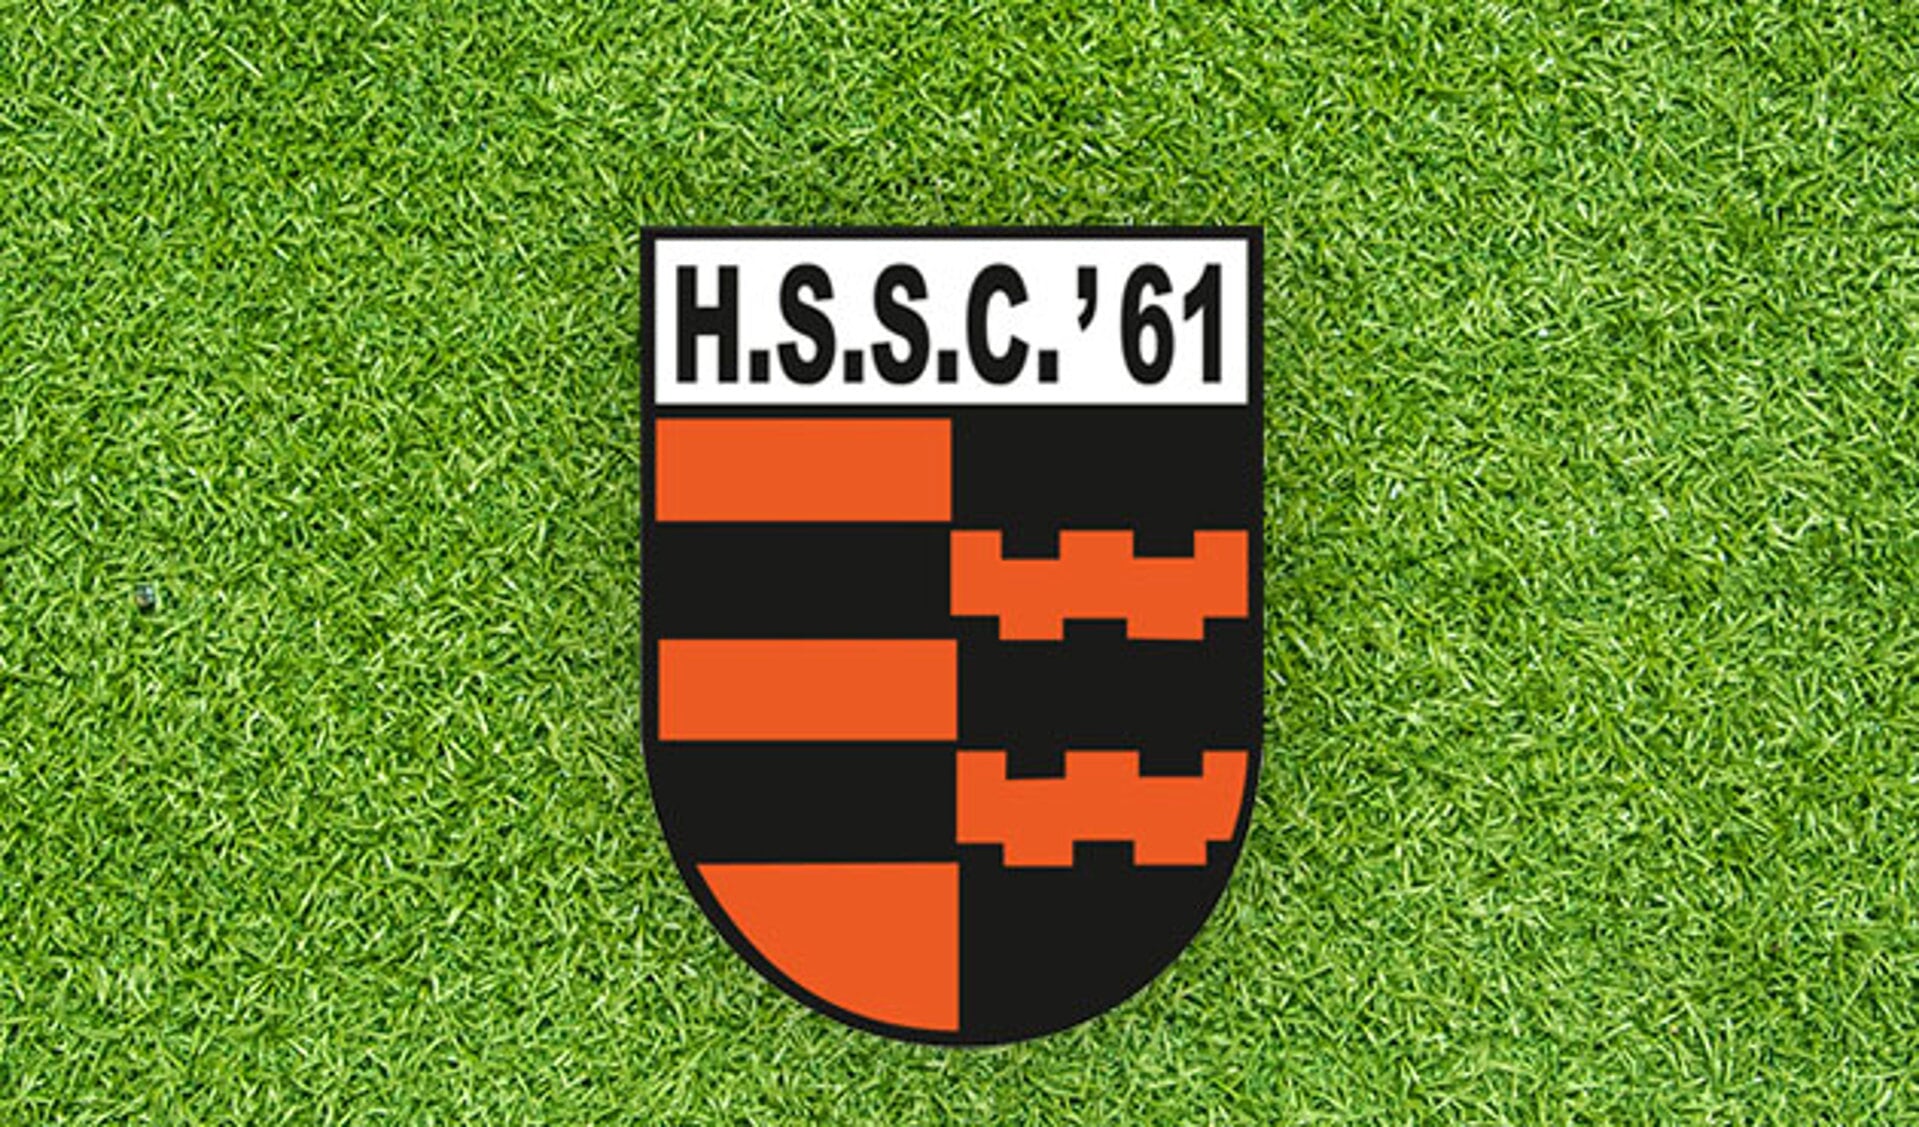 HSSC'61 naar finale Alblasserwaardtoernooi O23